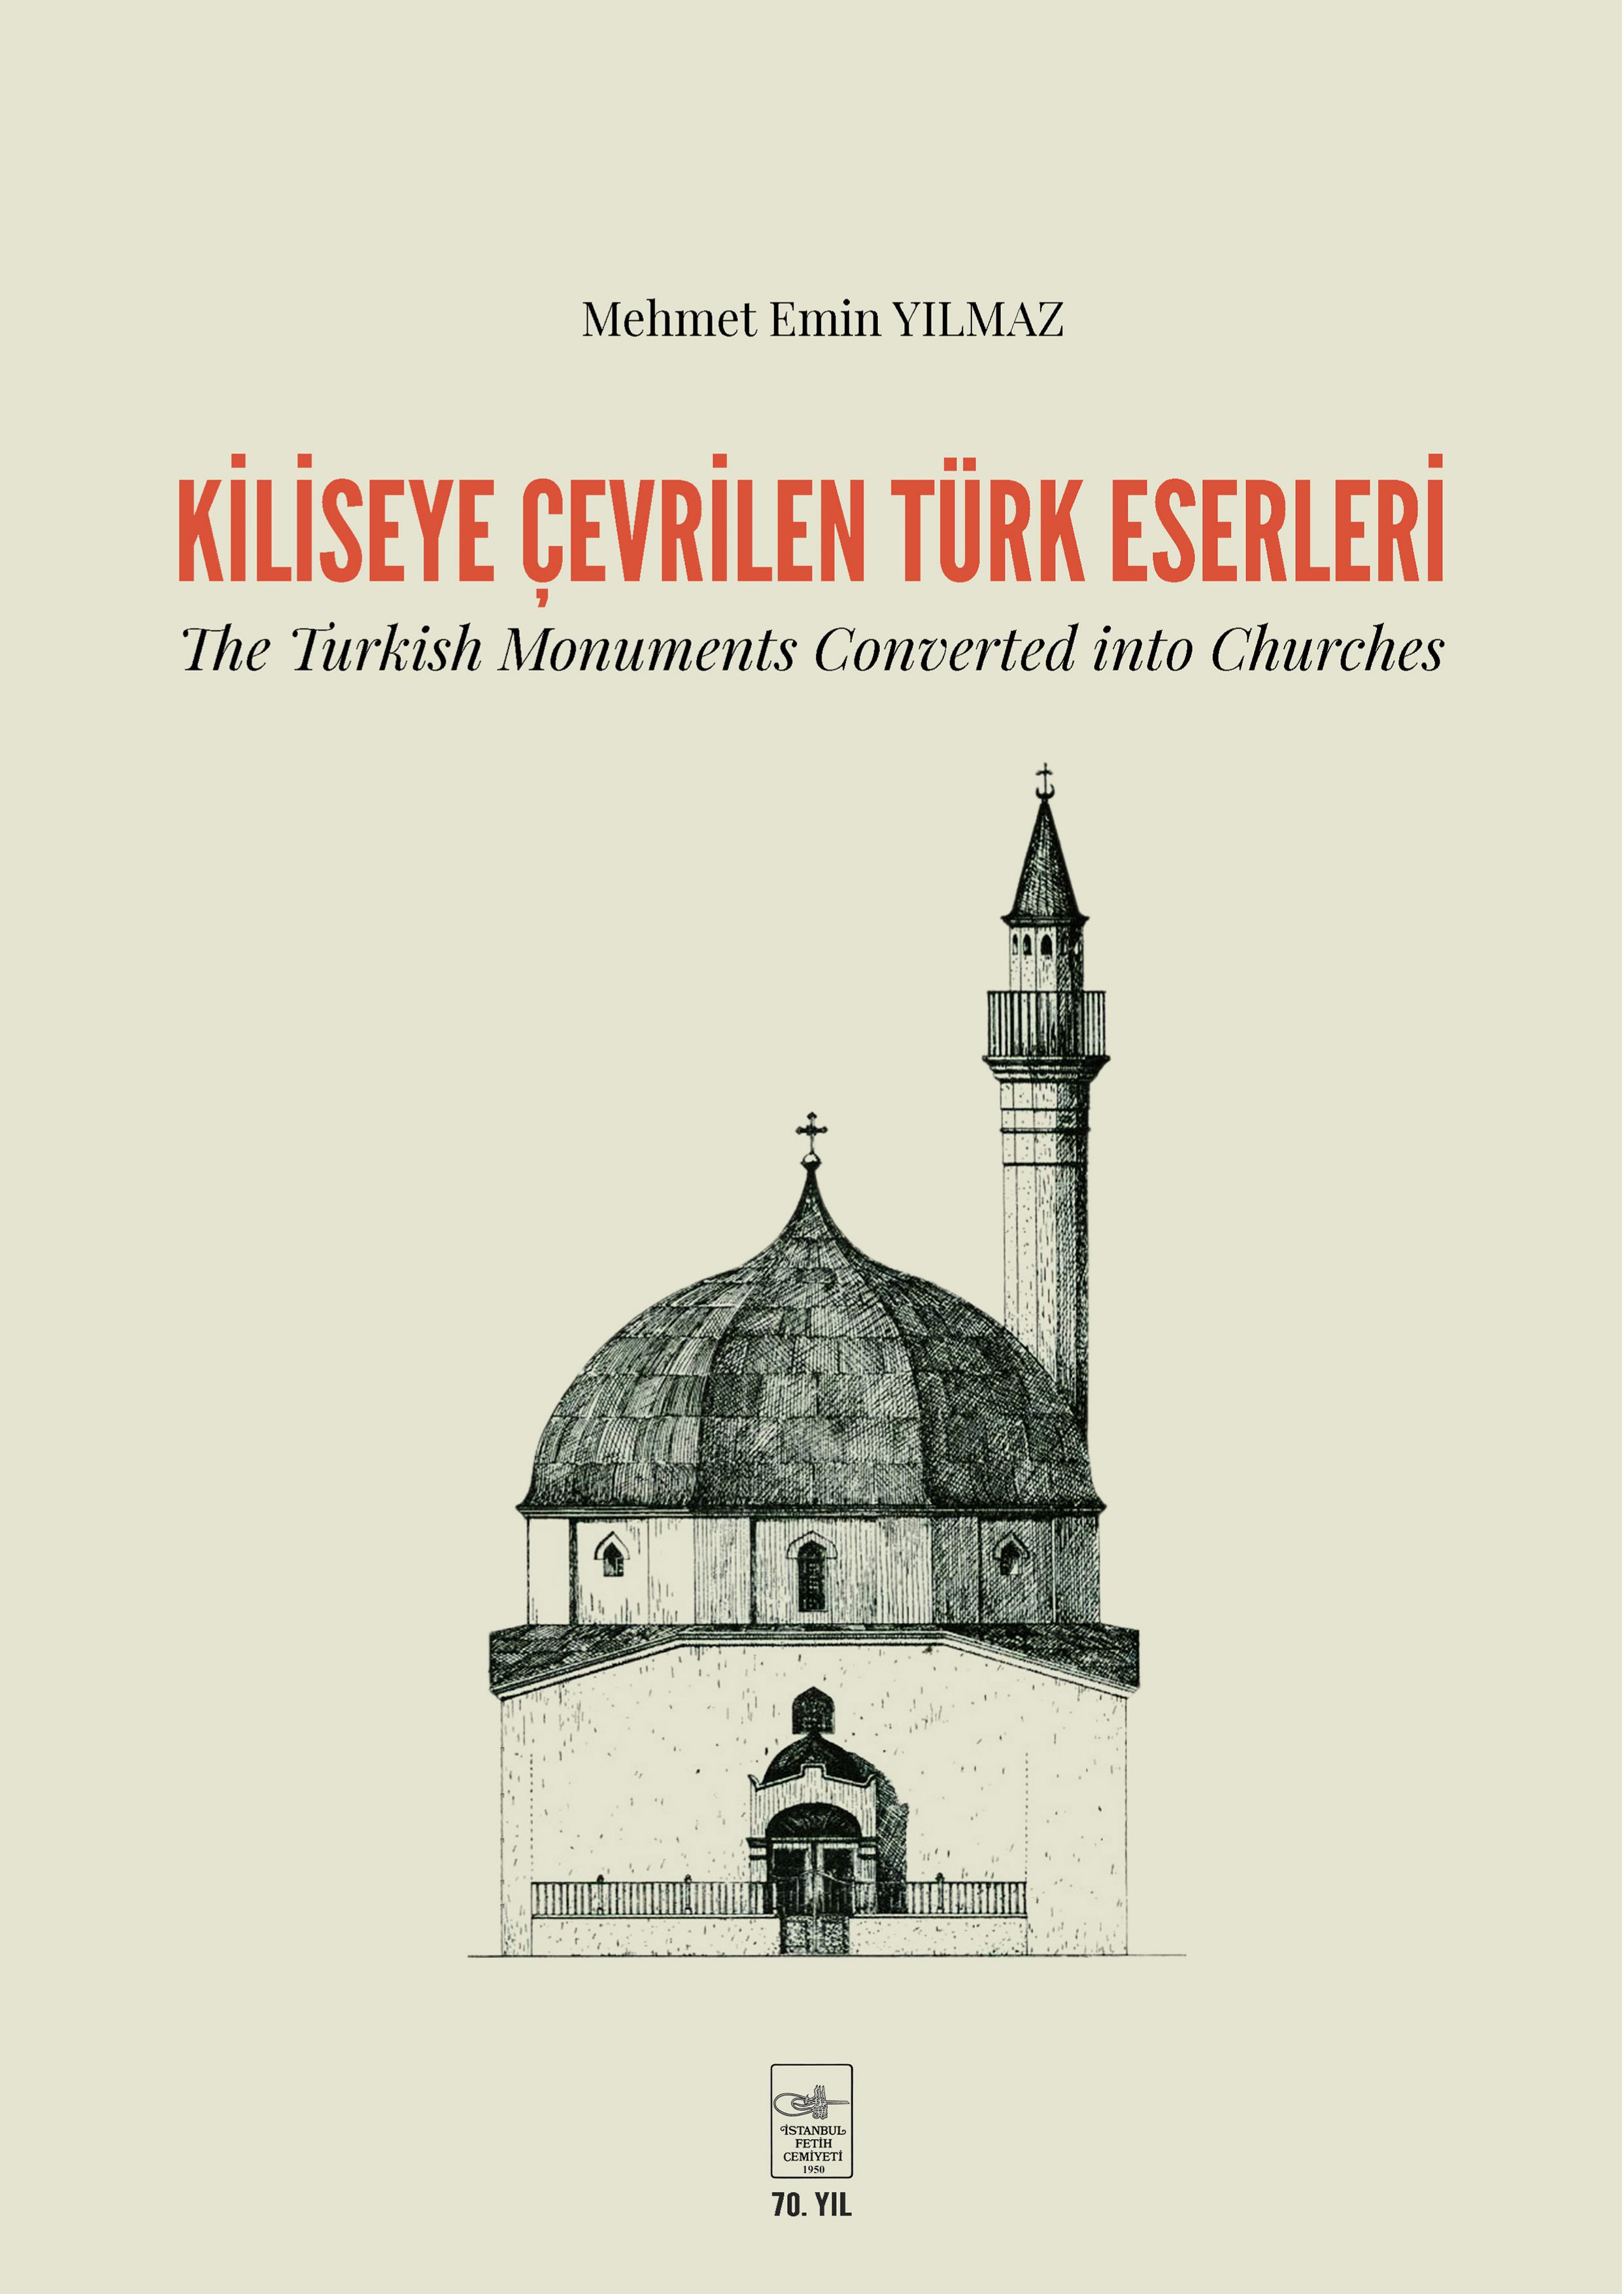 Yılmaz, Mehmet Emin : Kiliseye Çevrilen Türk Eserleri / The Turkish Monuments Converted into Churches